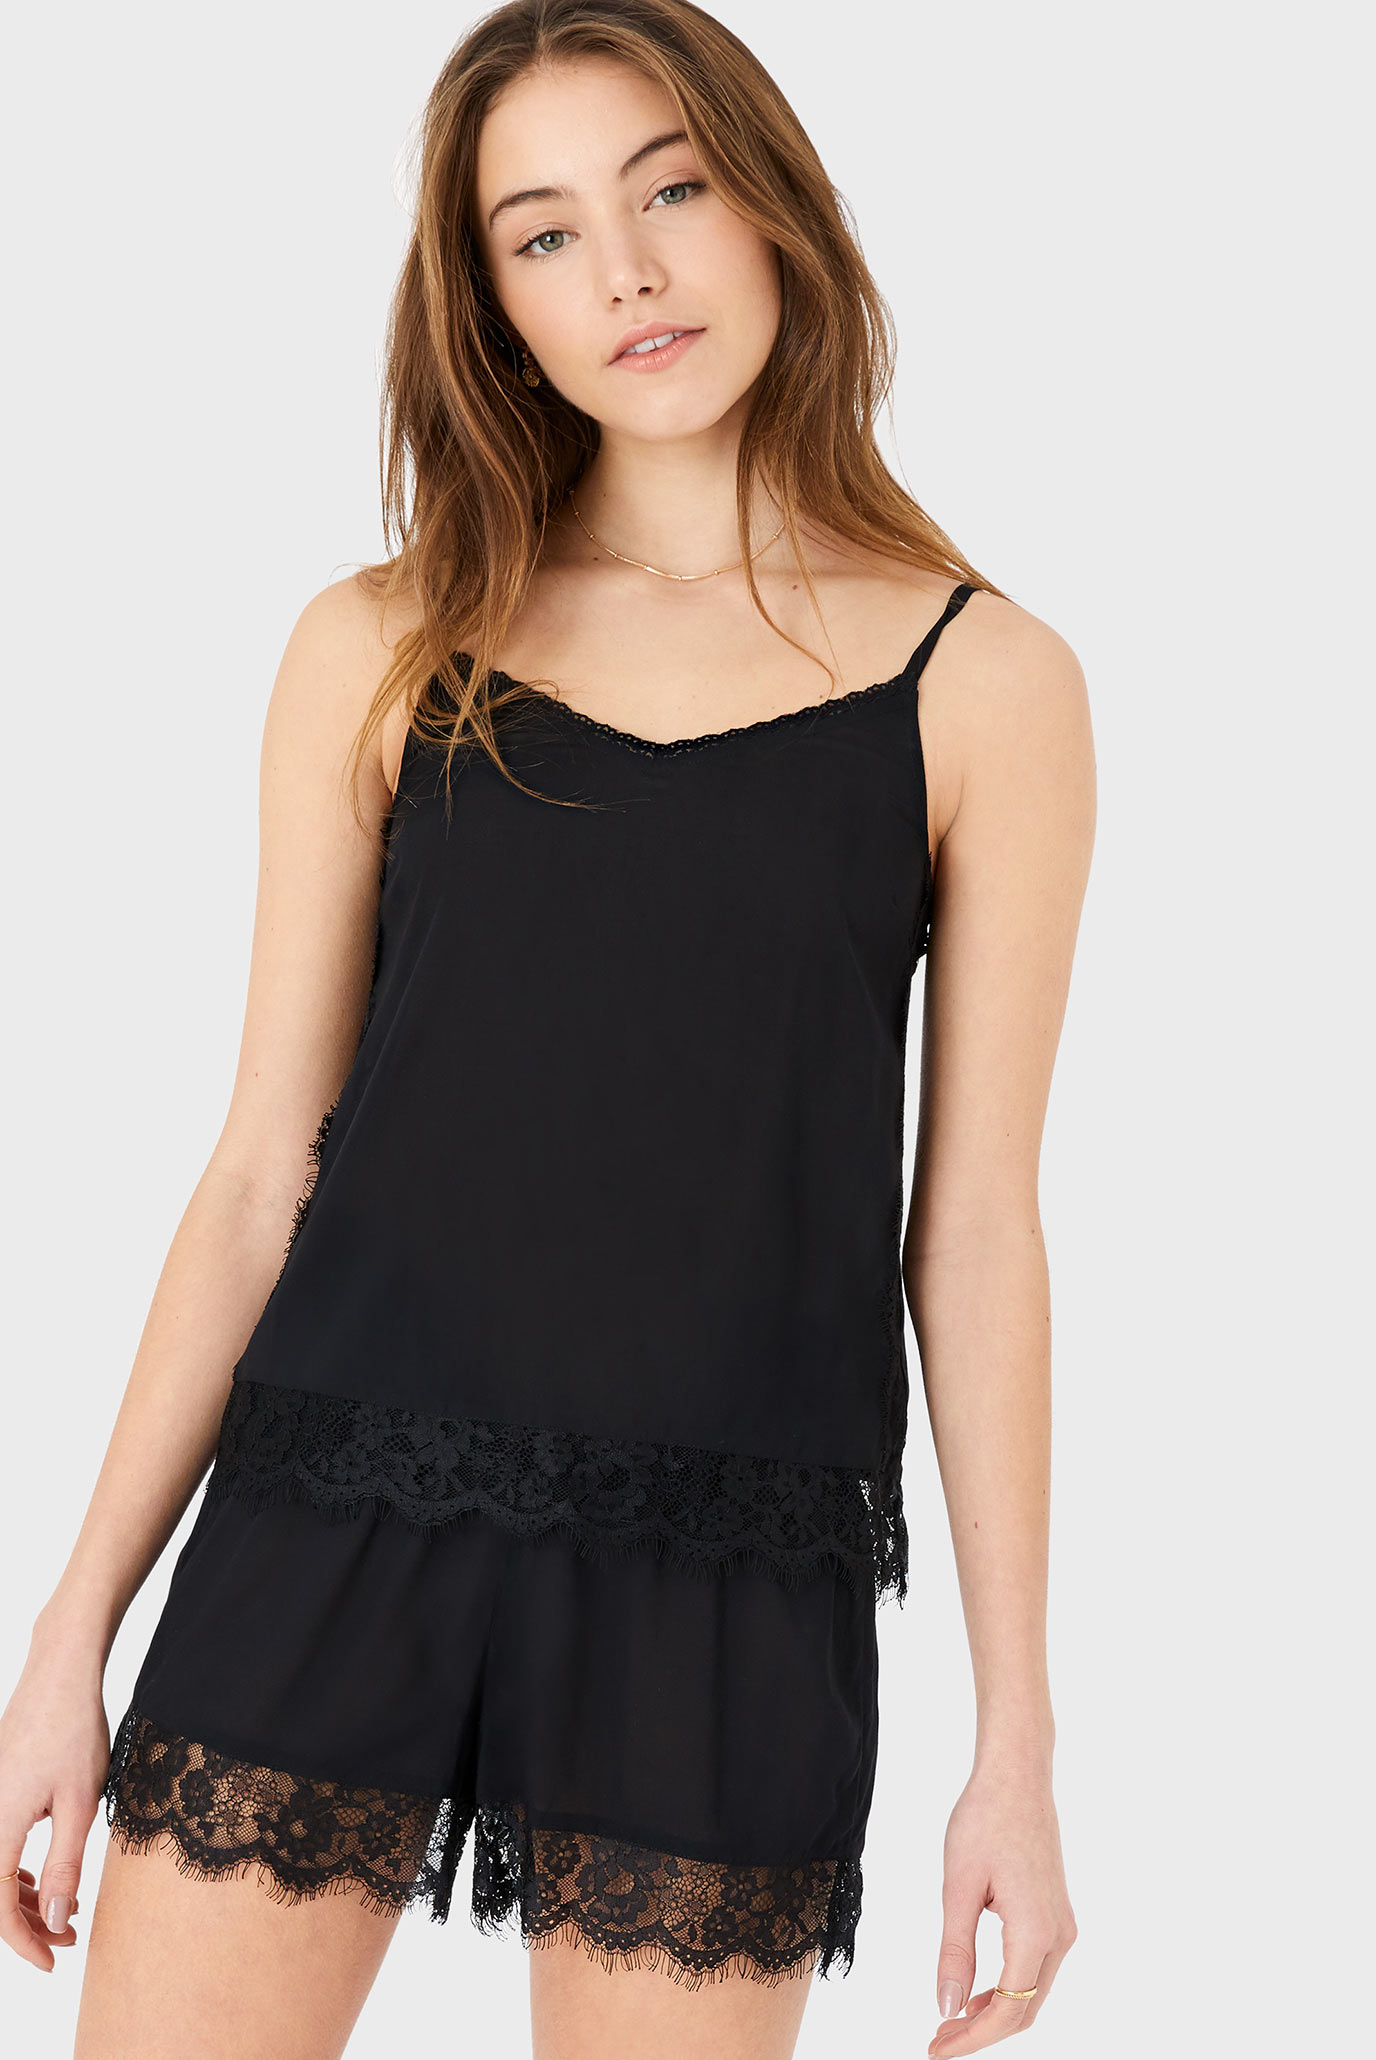 Женская черная пижама (топ, шорты) BALCONY LACE VEST SE 1